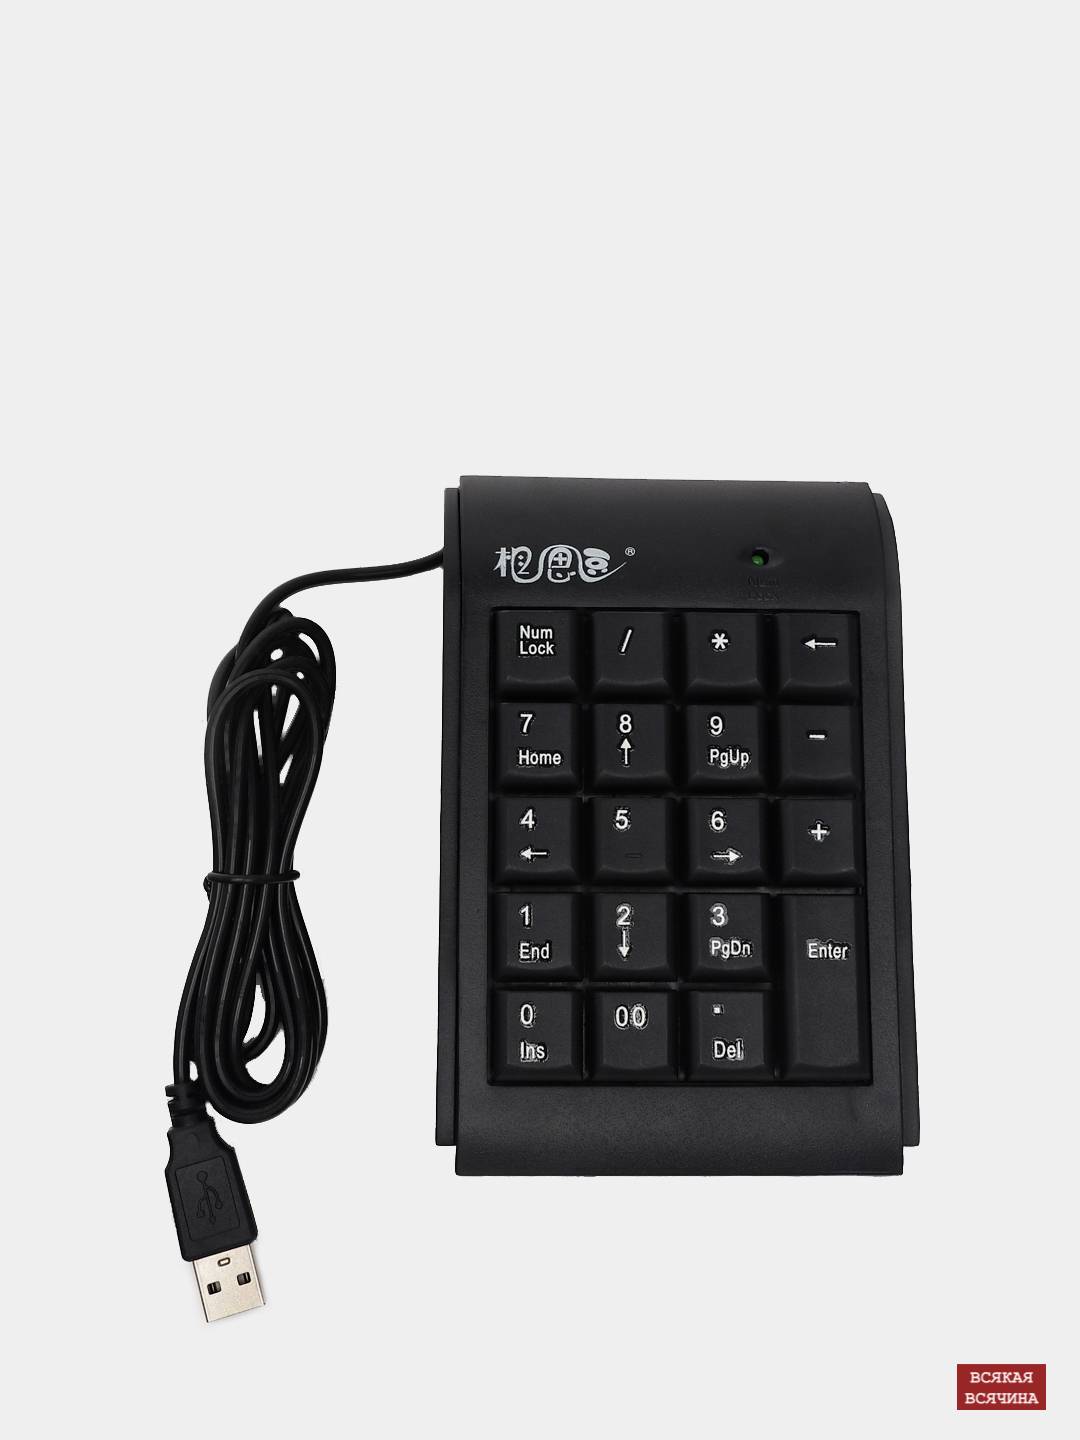 Цифровая Клавиатура Для Ноутбука Купить